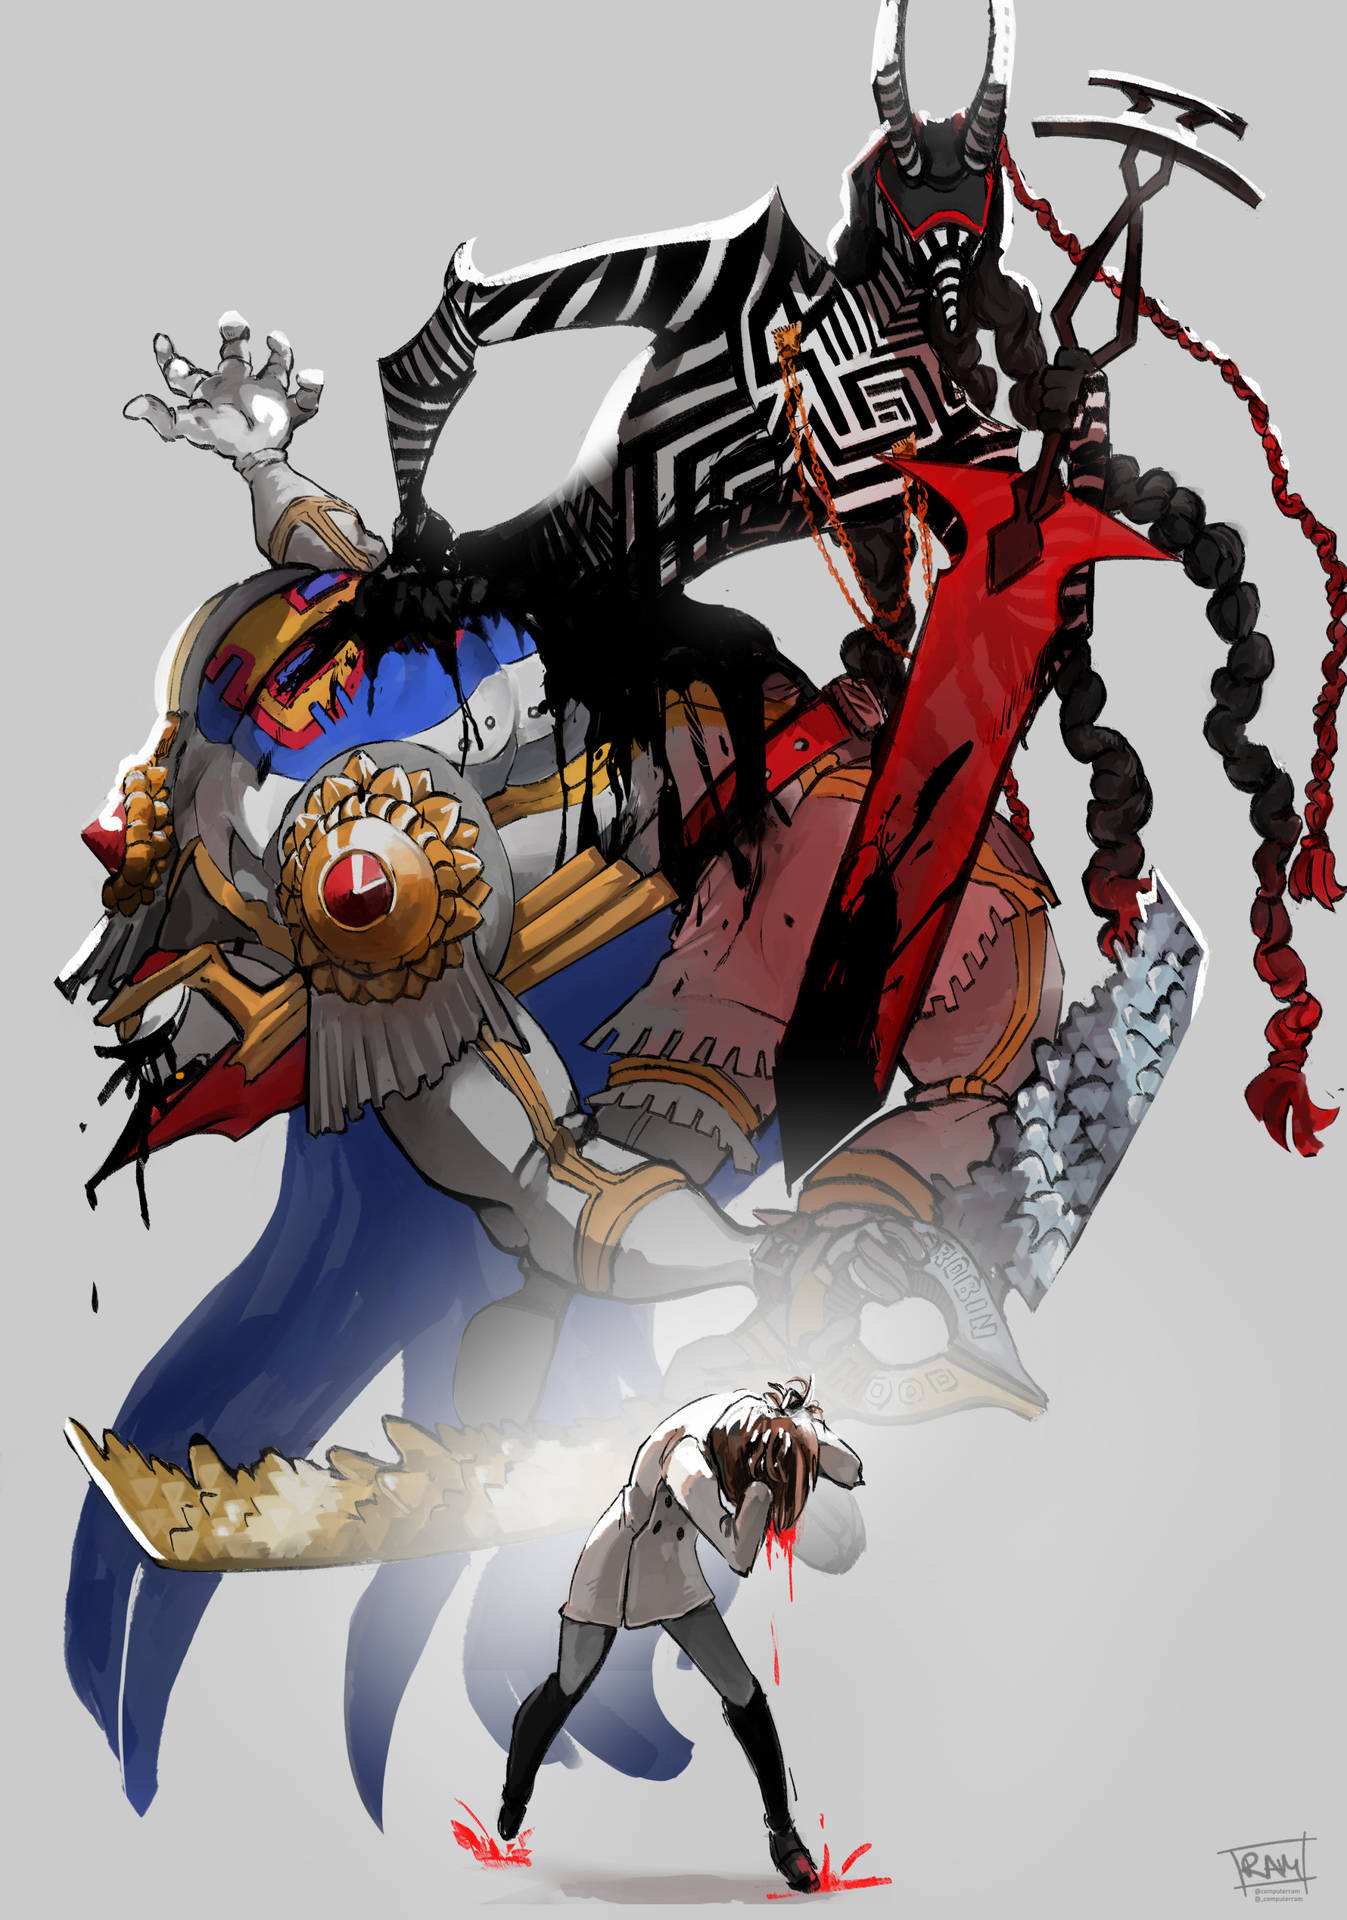 Persona 5 Royal Striped Creature